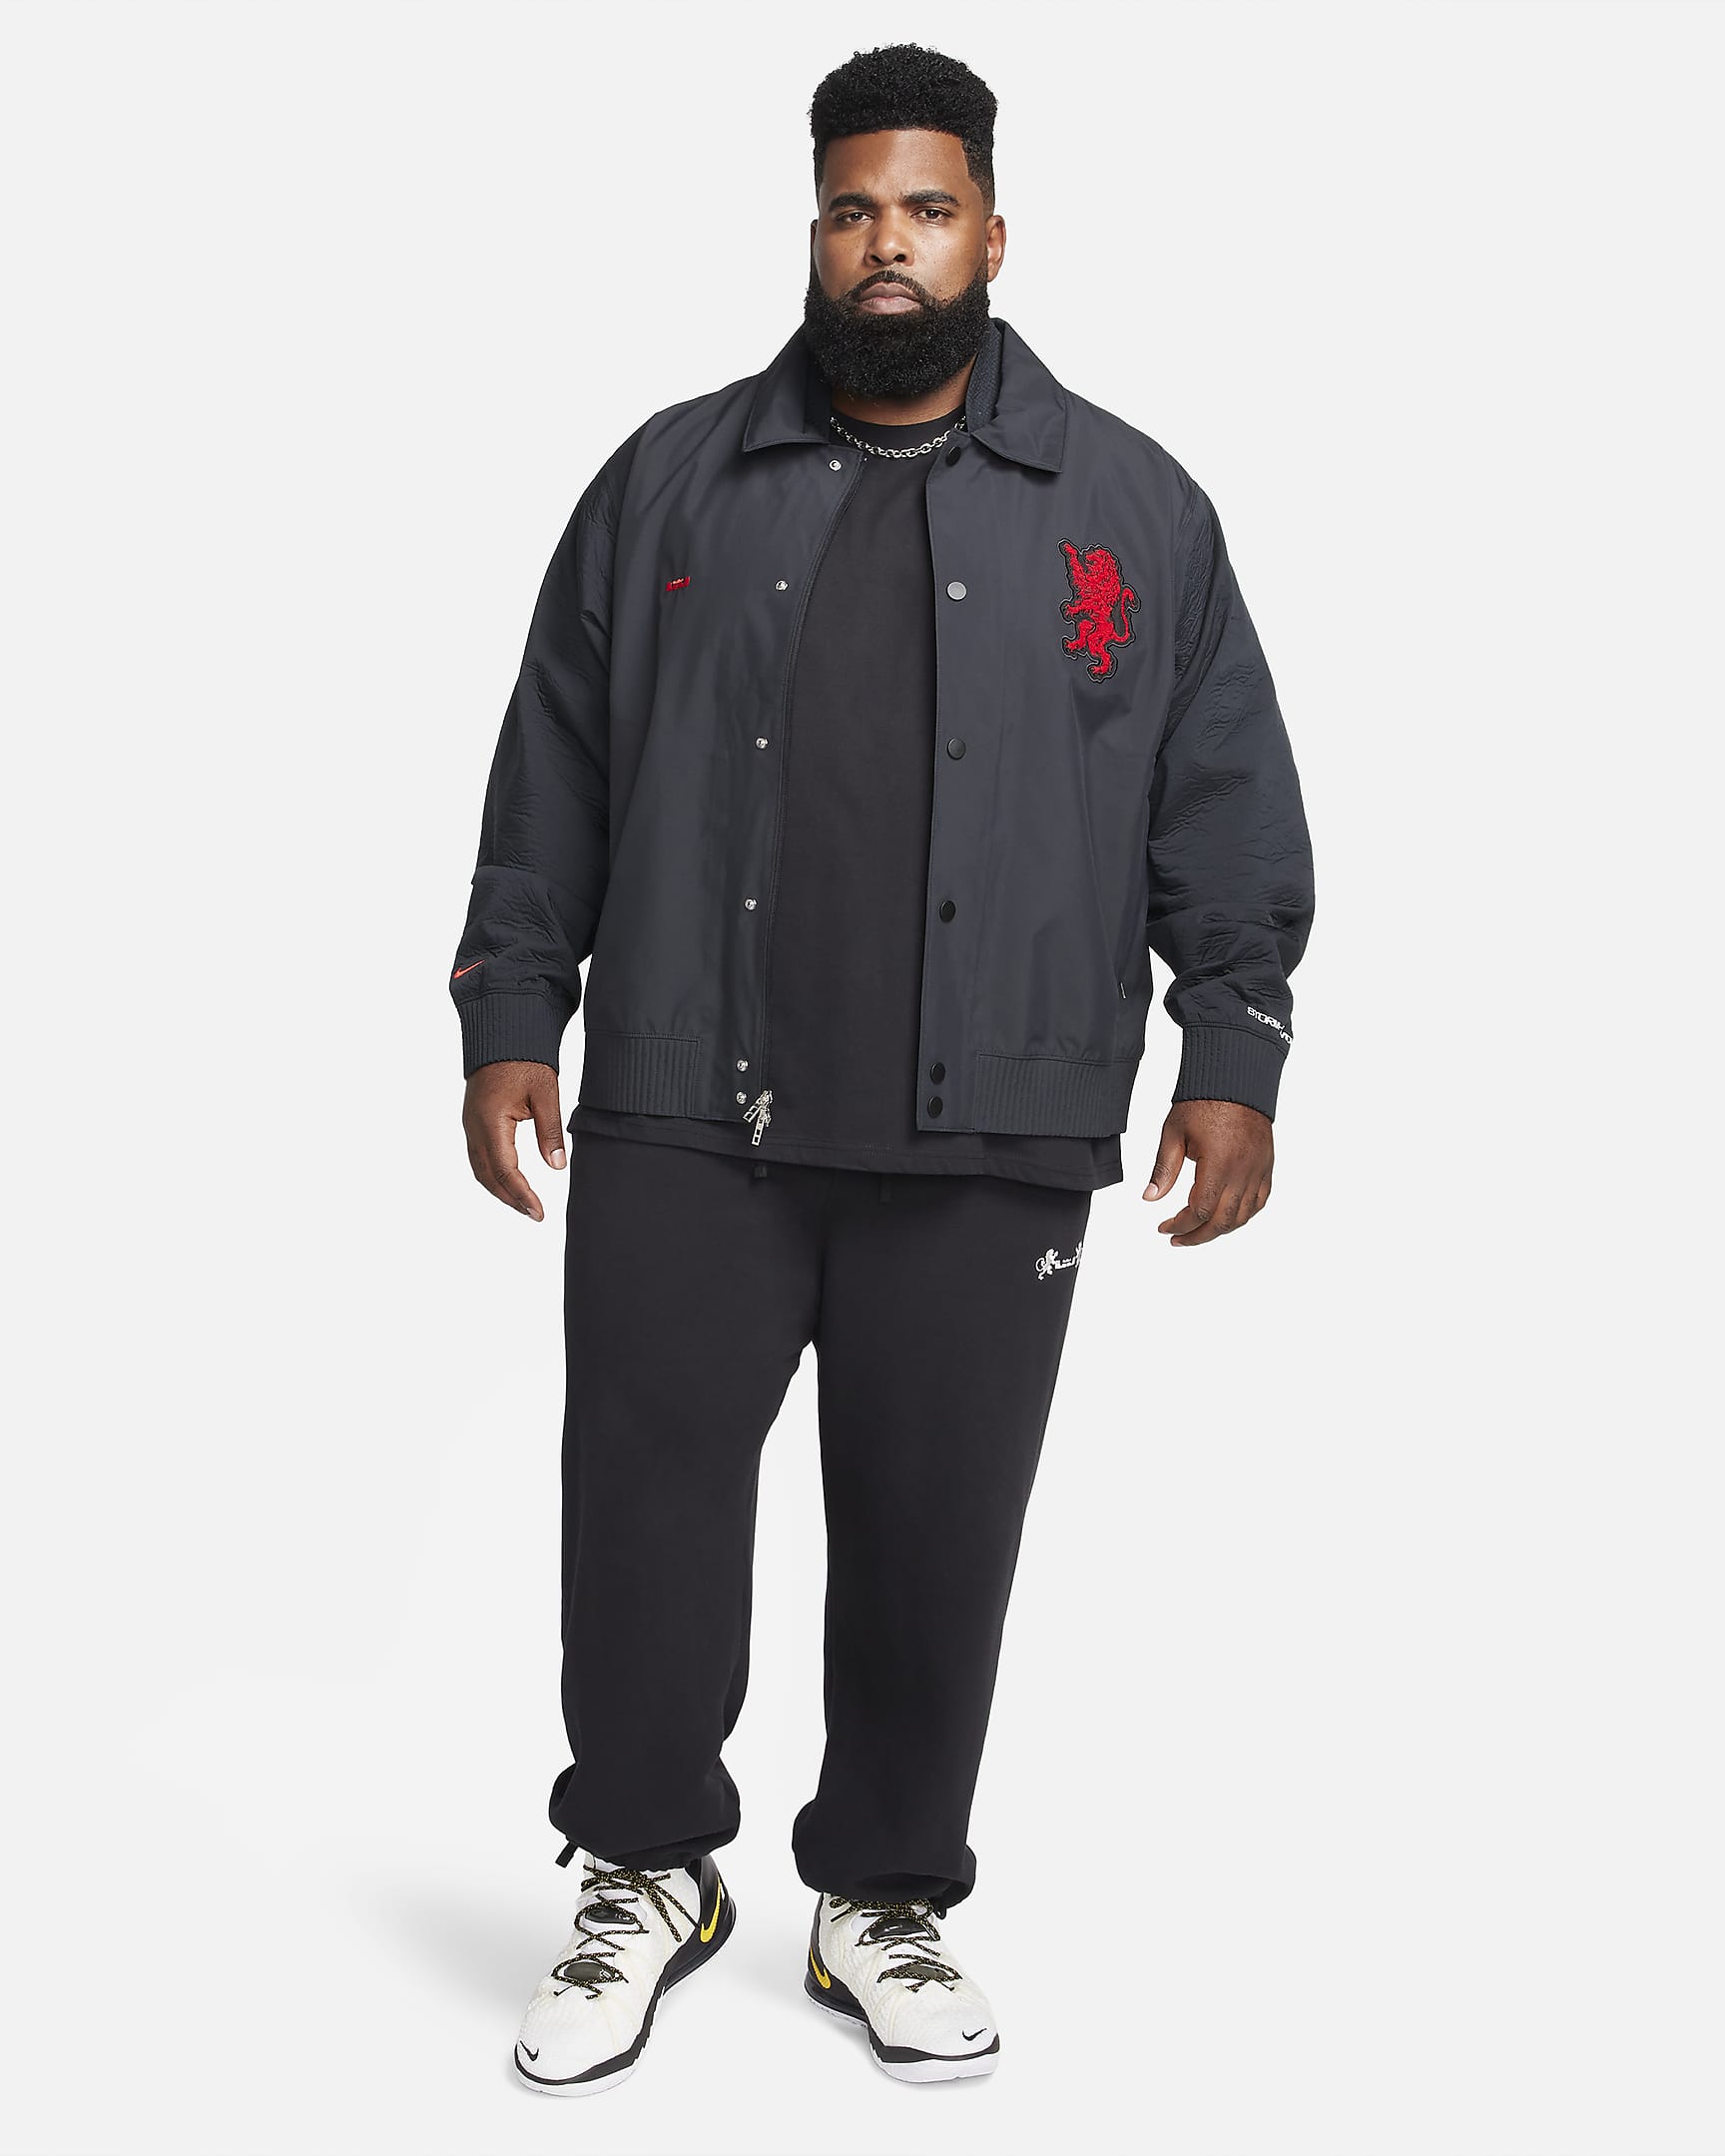 LeBron Men's Storm-FIT ADV Jacket. Nike BG